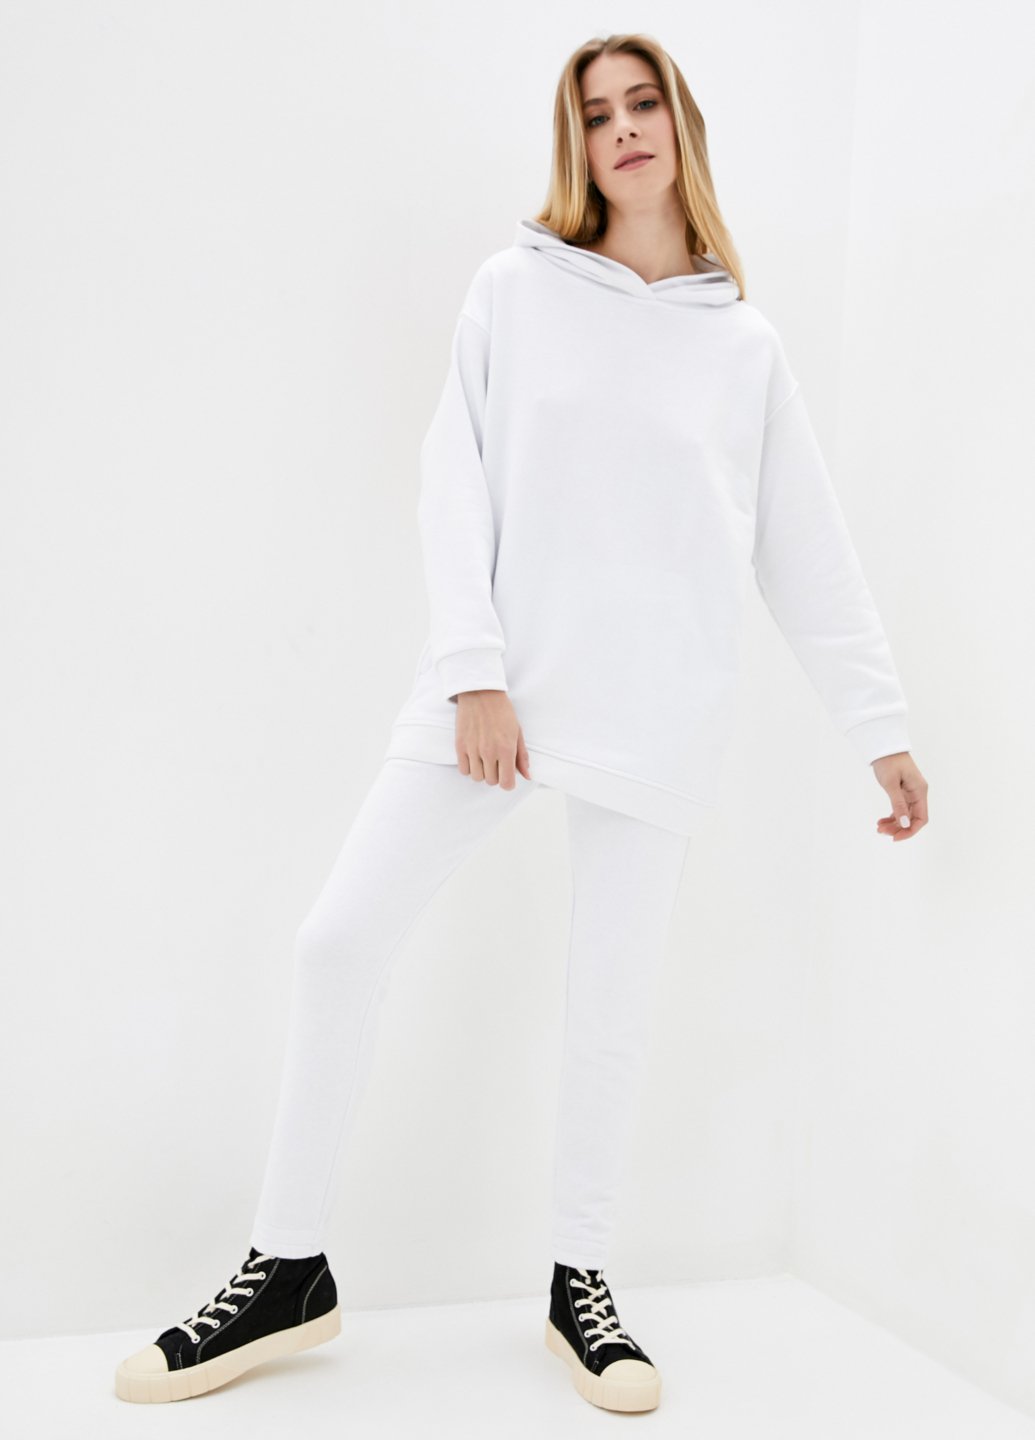 Купить Спортивный костюм женский белого цвета Merlini Брент 100000078, размер 42-44 в интернет-магазине